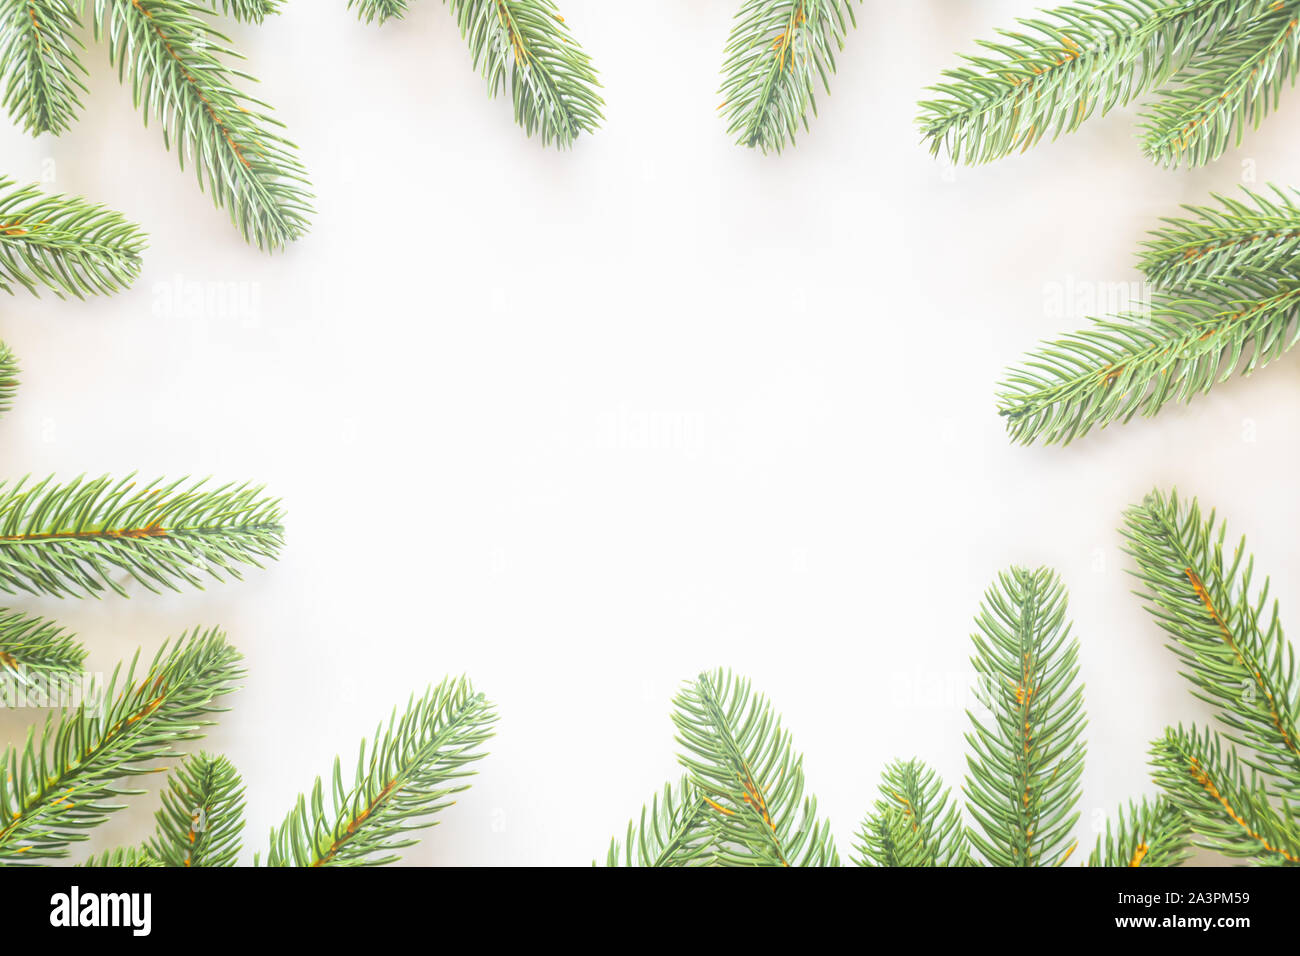 Urlaub Weihnachten Karte Hintergrund mit festlichen Dekoration Kugel, Sterne, Schneeflocken, Geschenkbox, Tannenzapfen auf einem weißen Hintergrund von Flach, Ansicht von oben. Stockfoto